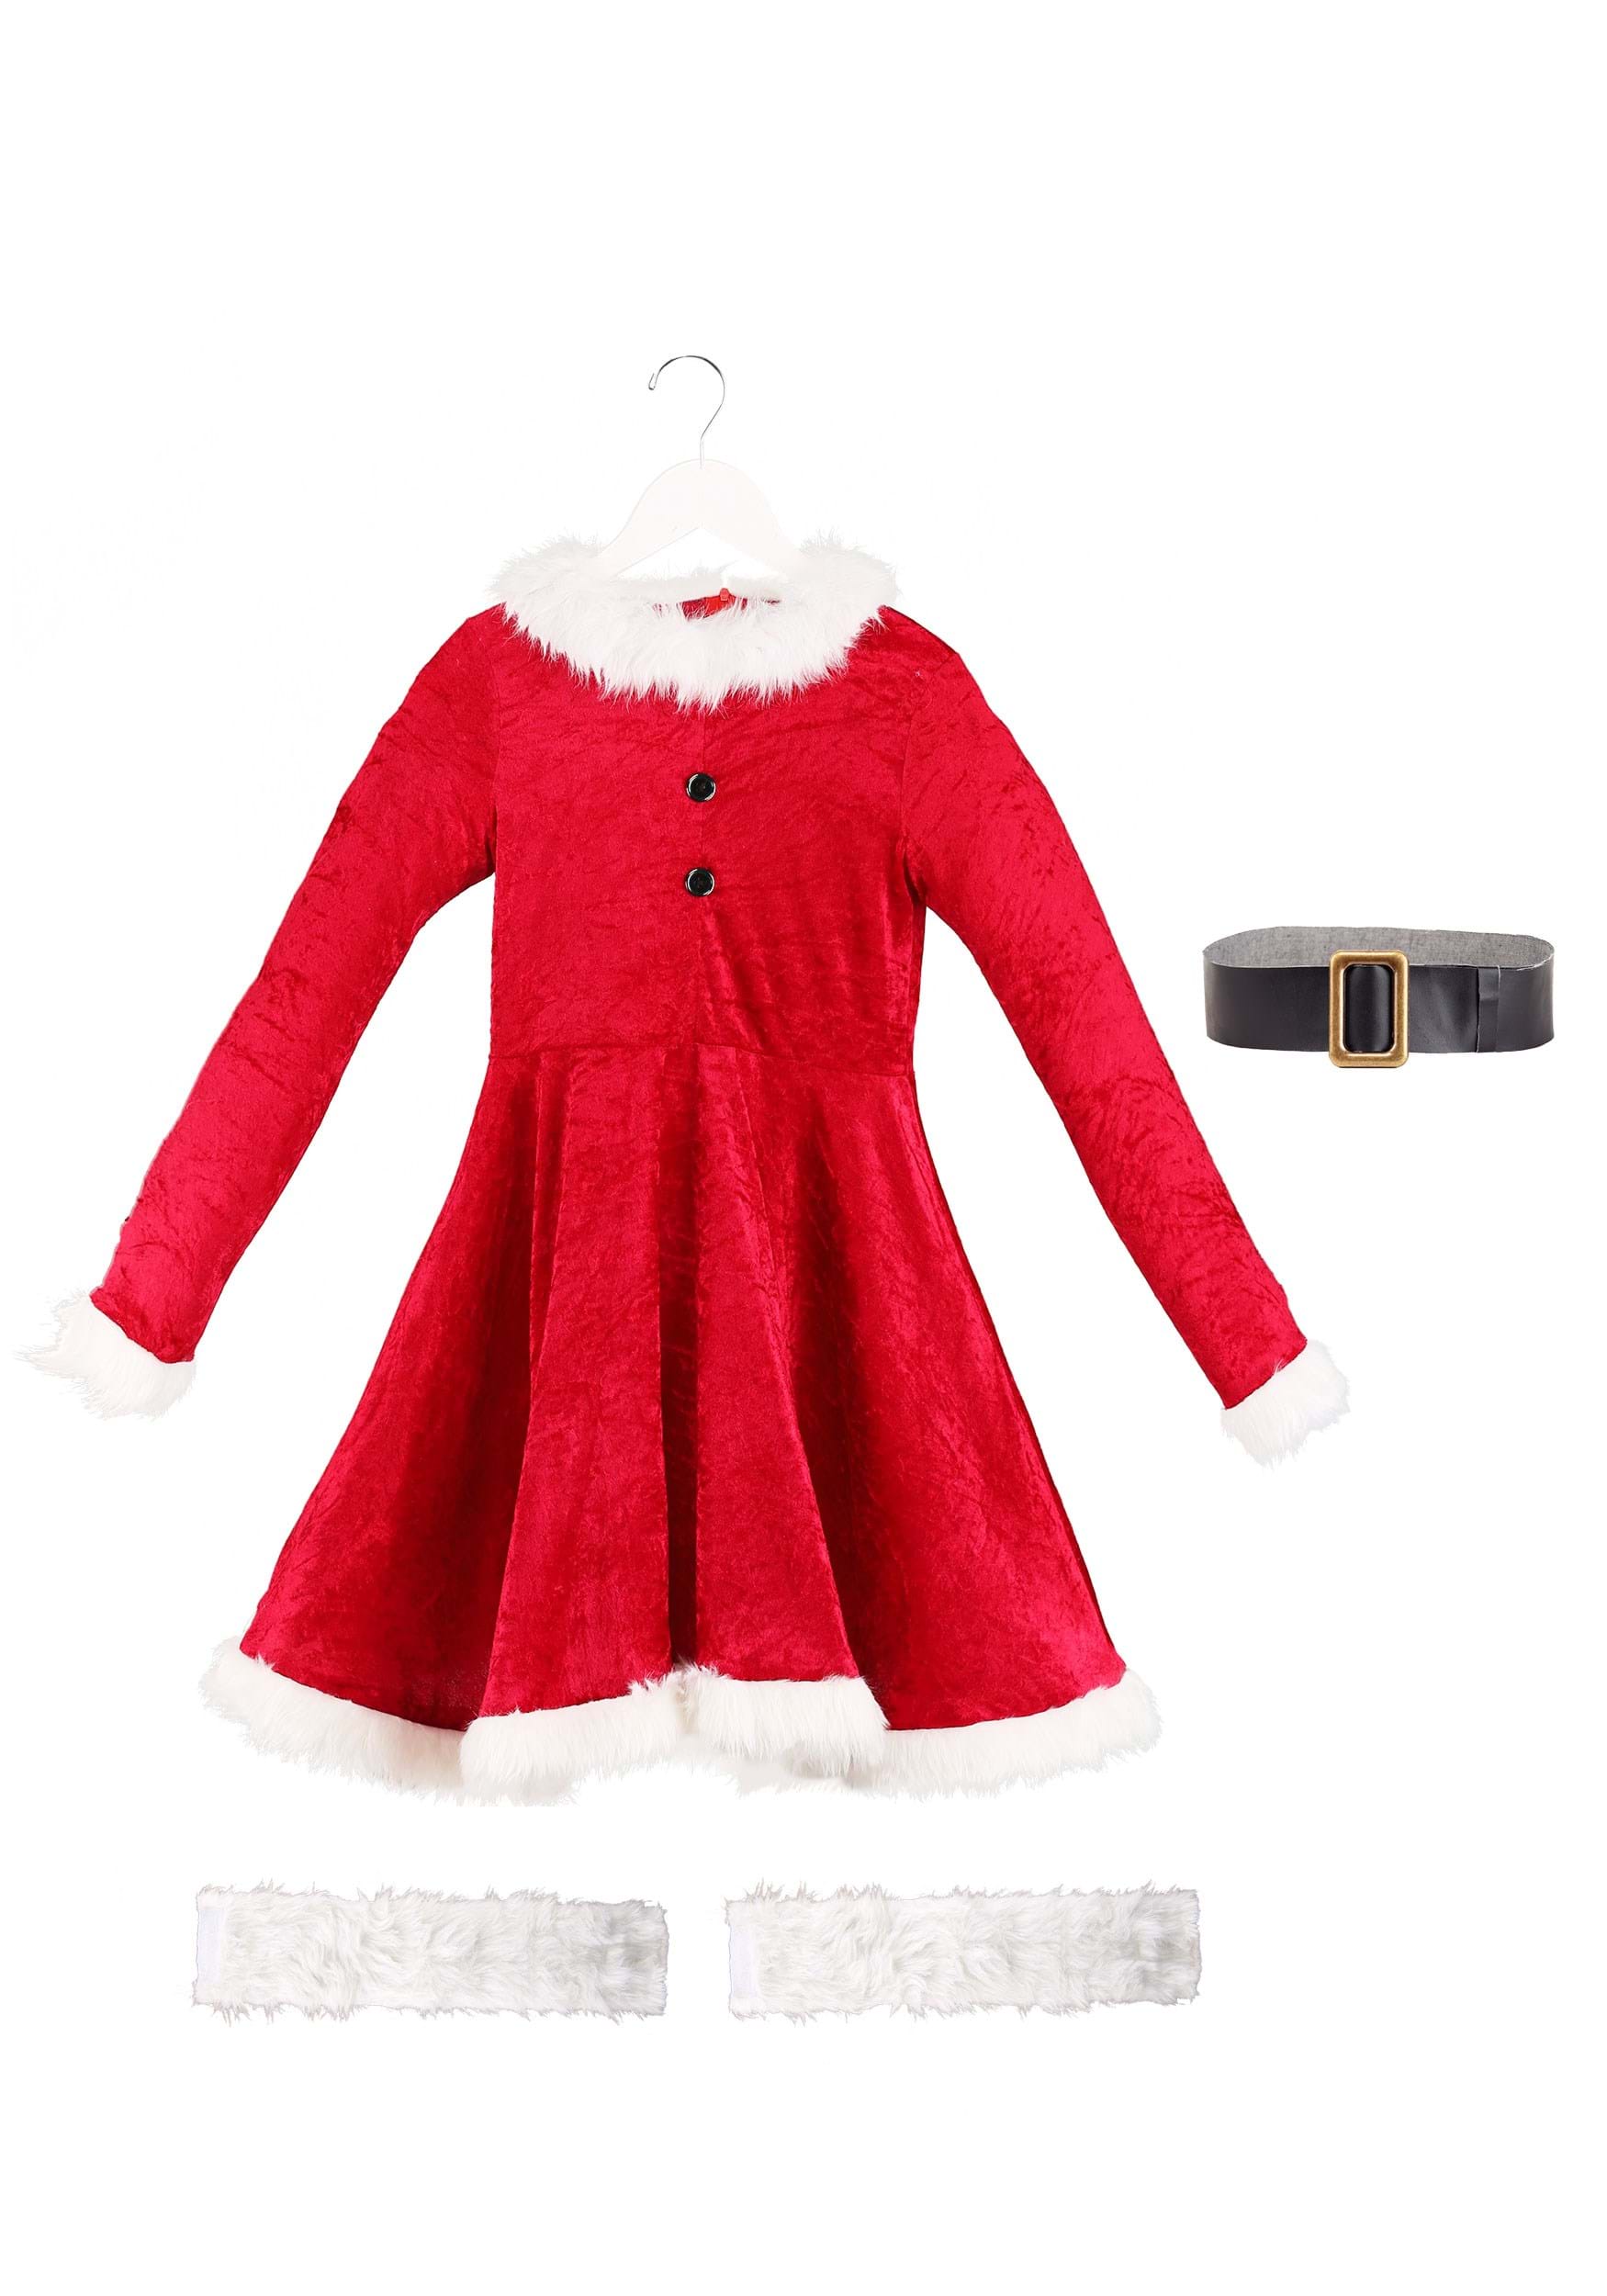 Little Girls Sleeveless Christmas Party Dress Mrs Santa Claus Festive  Costume | eBay